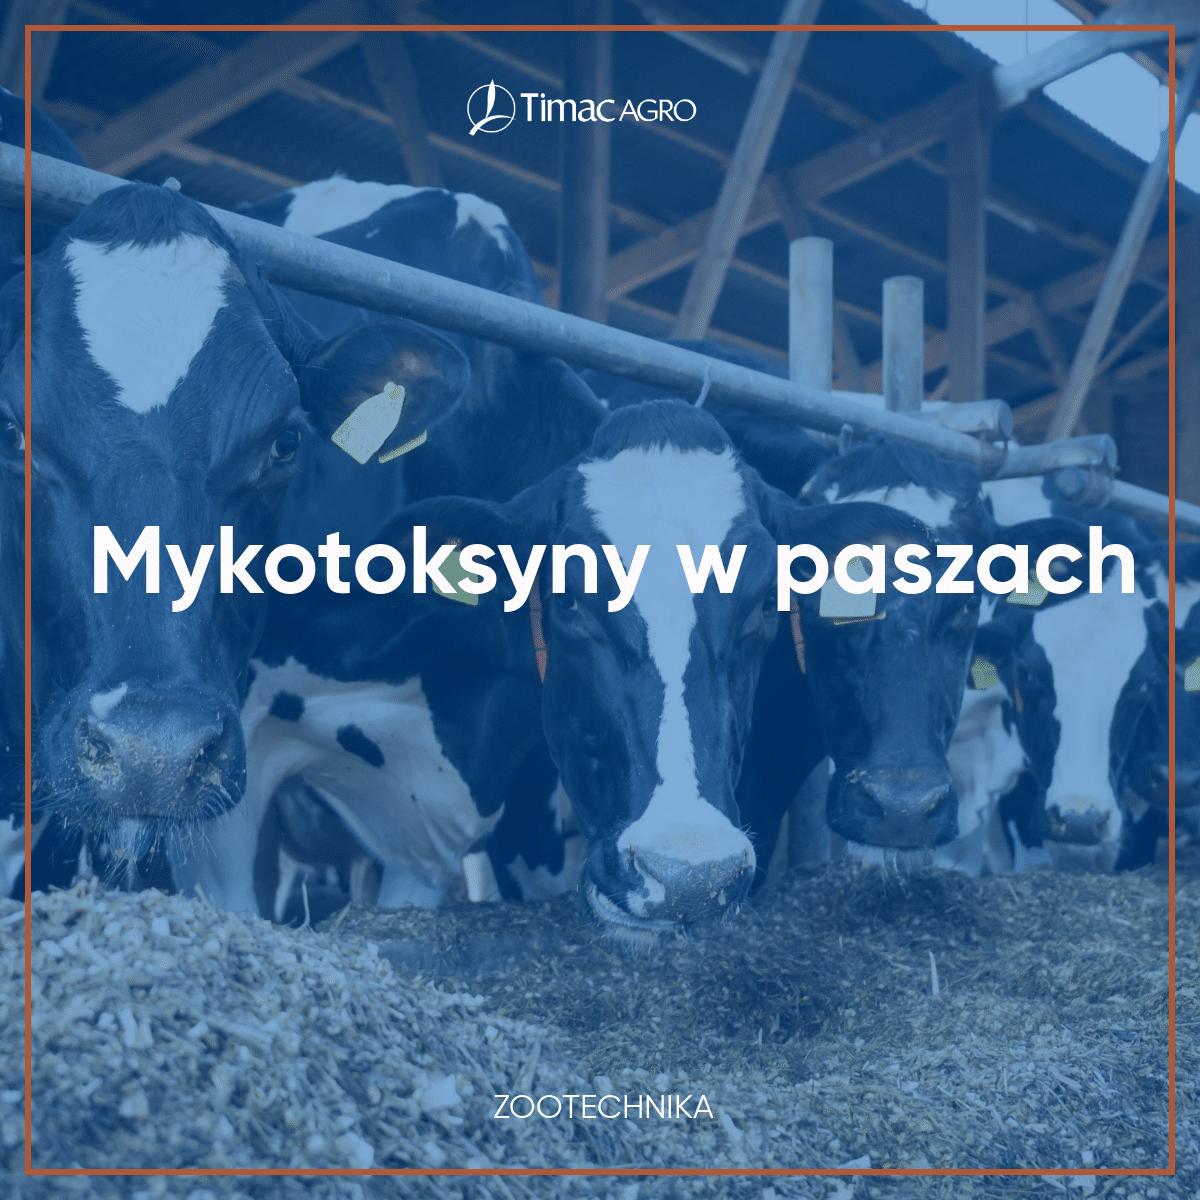 Mykotoksyny w paszy dla bydła